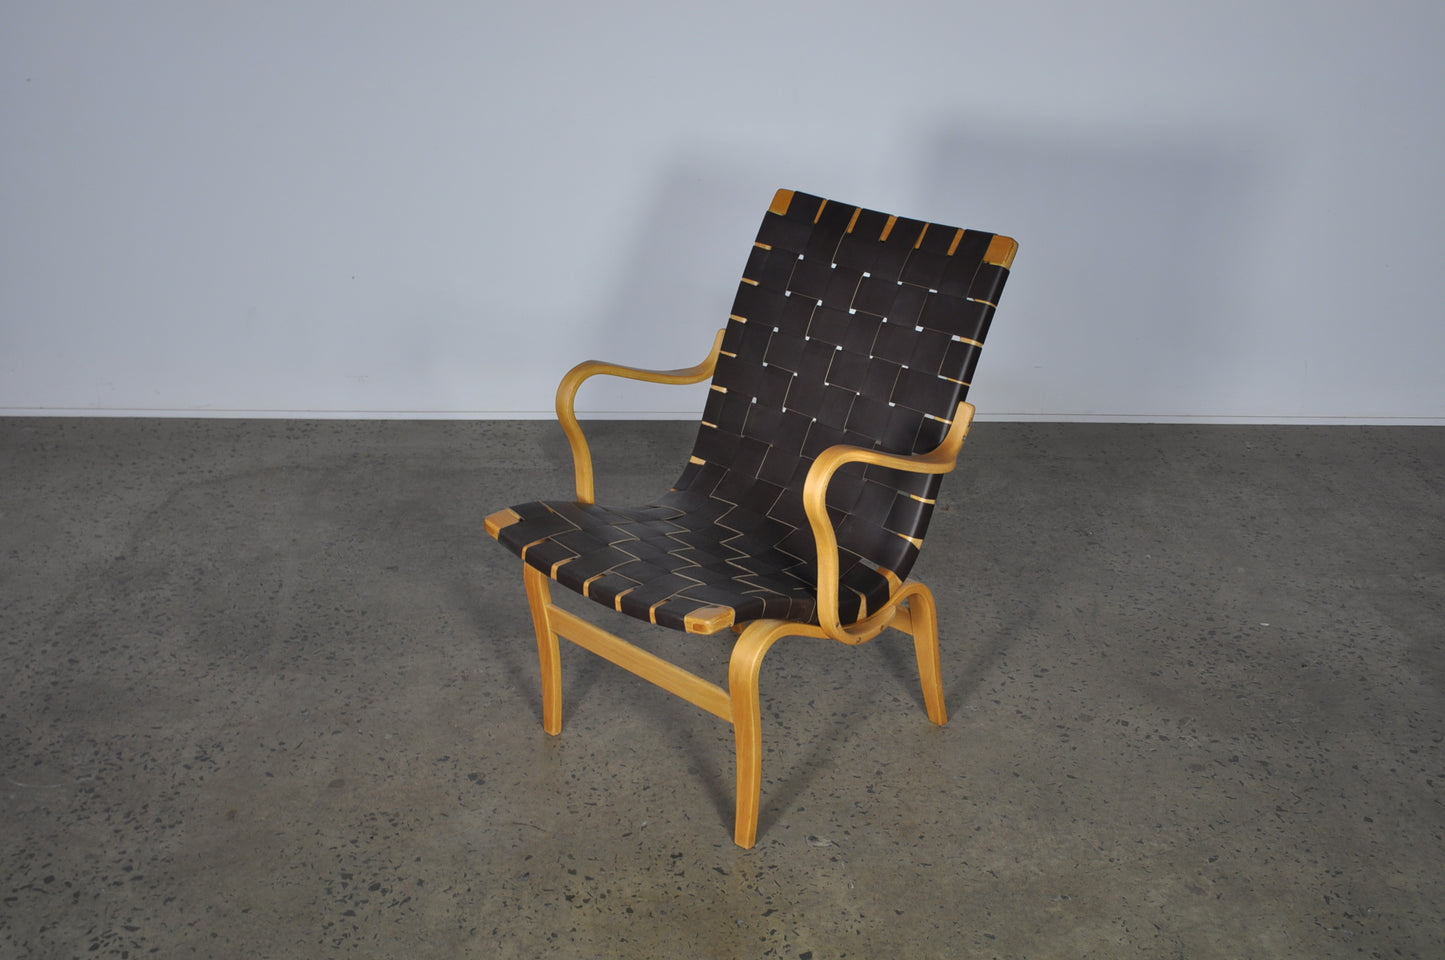 "Eva" lounge chair by Bruno Mathsson.